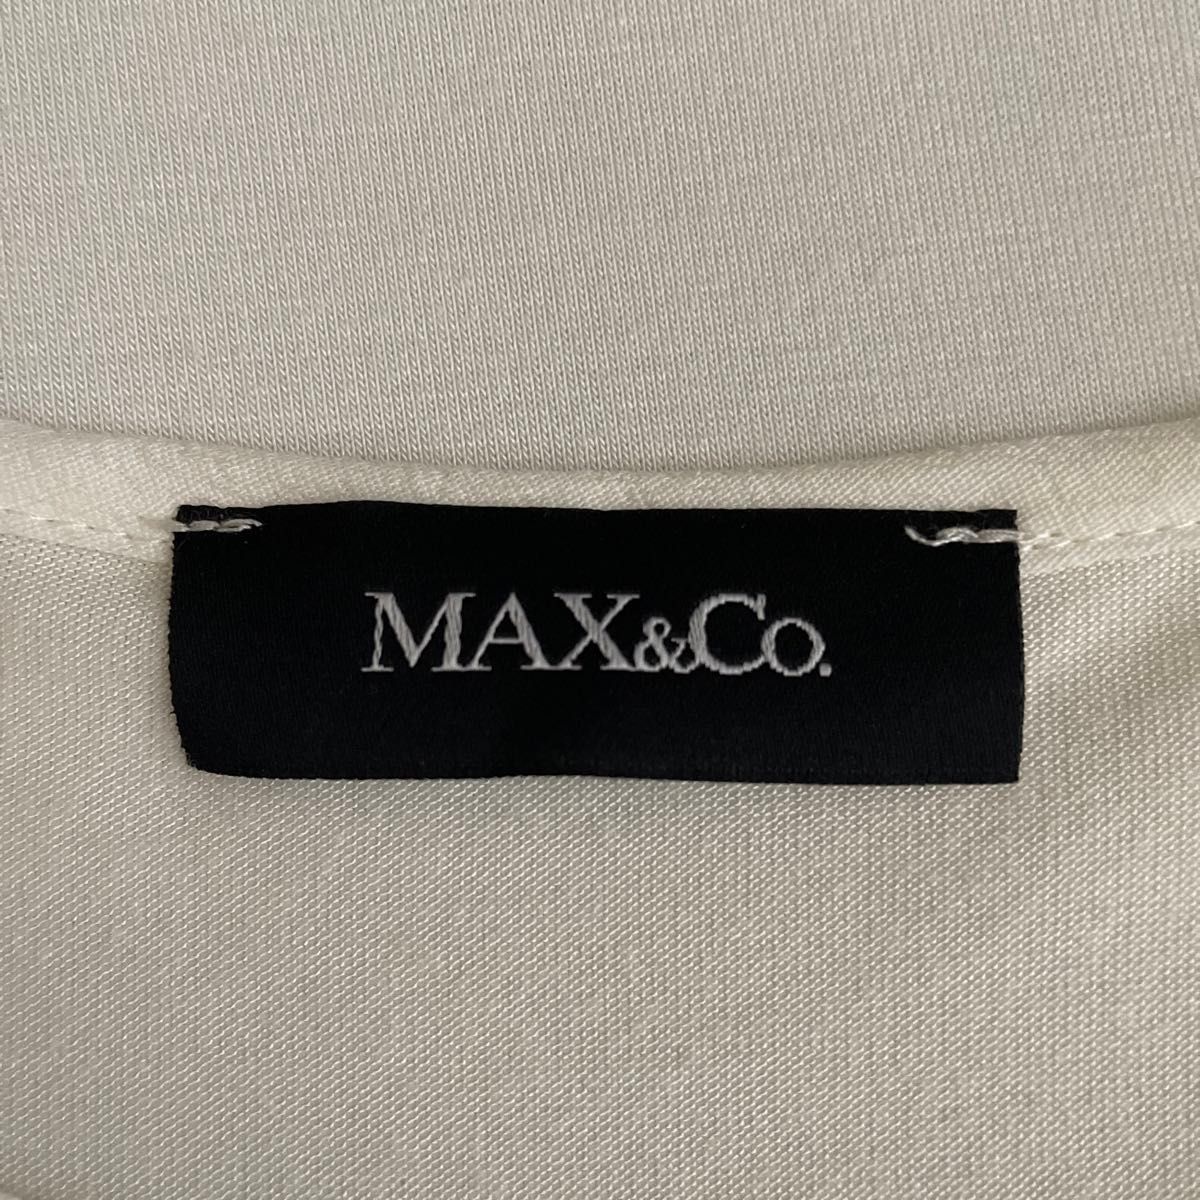 ☆MAX&Co マックスアンドコー リボンブラウス『M』☆